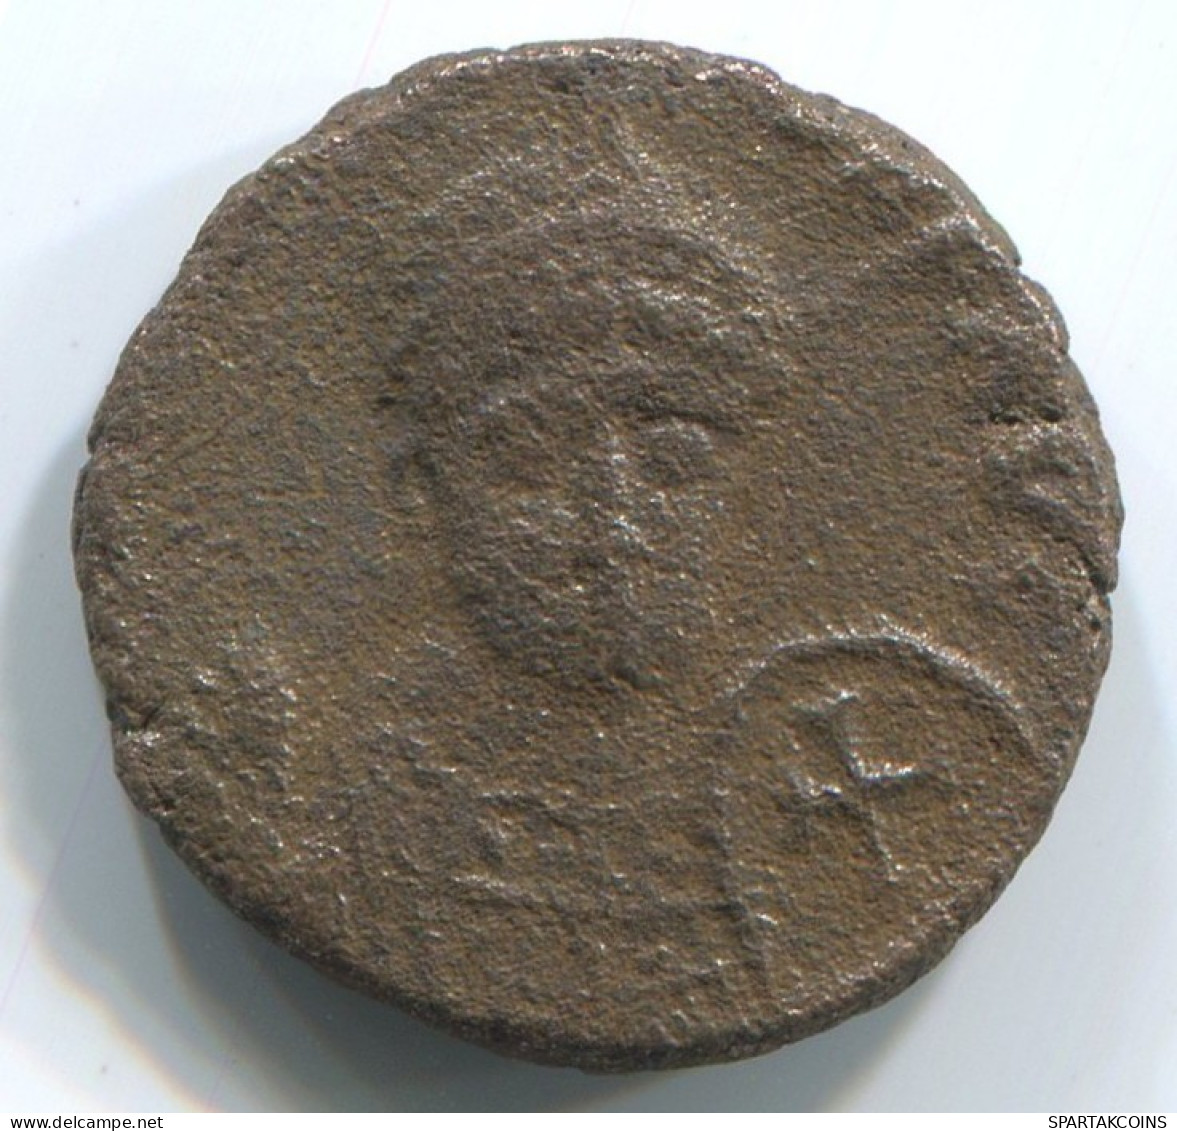 LATE ROMAN EMPIRE Coin Ancient Authentic Roman Coin 2.2g/14mm #ANT2290.14.U.A - La Fin De L'Empire (363-476)